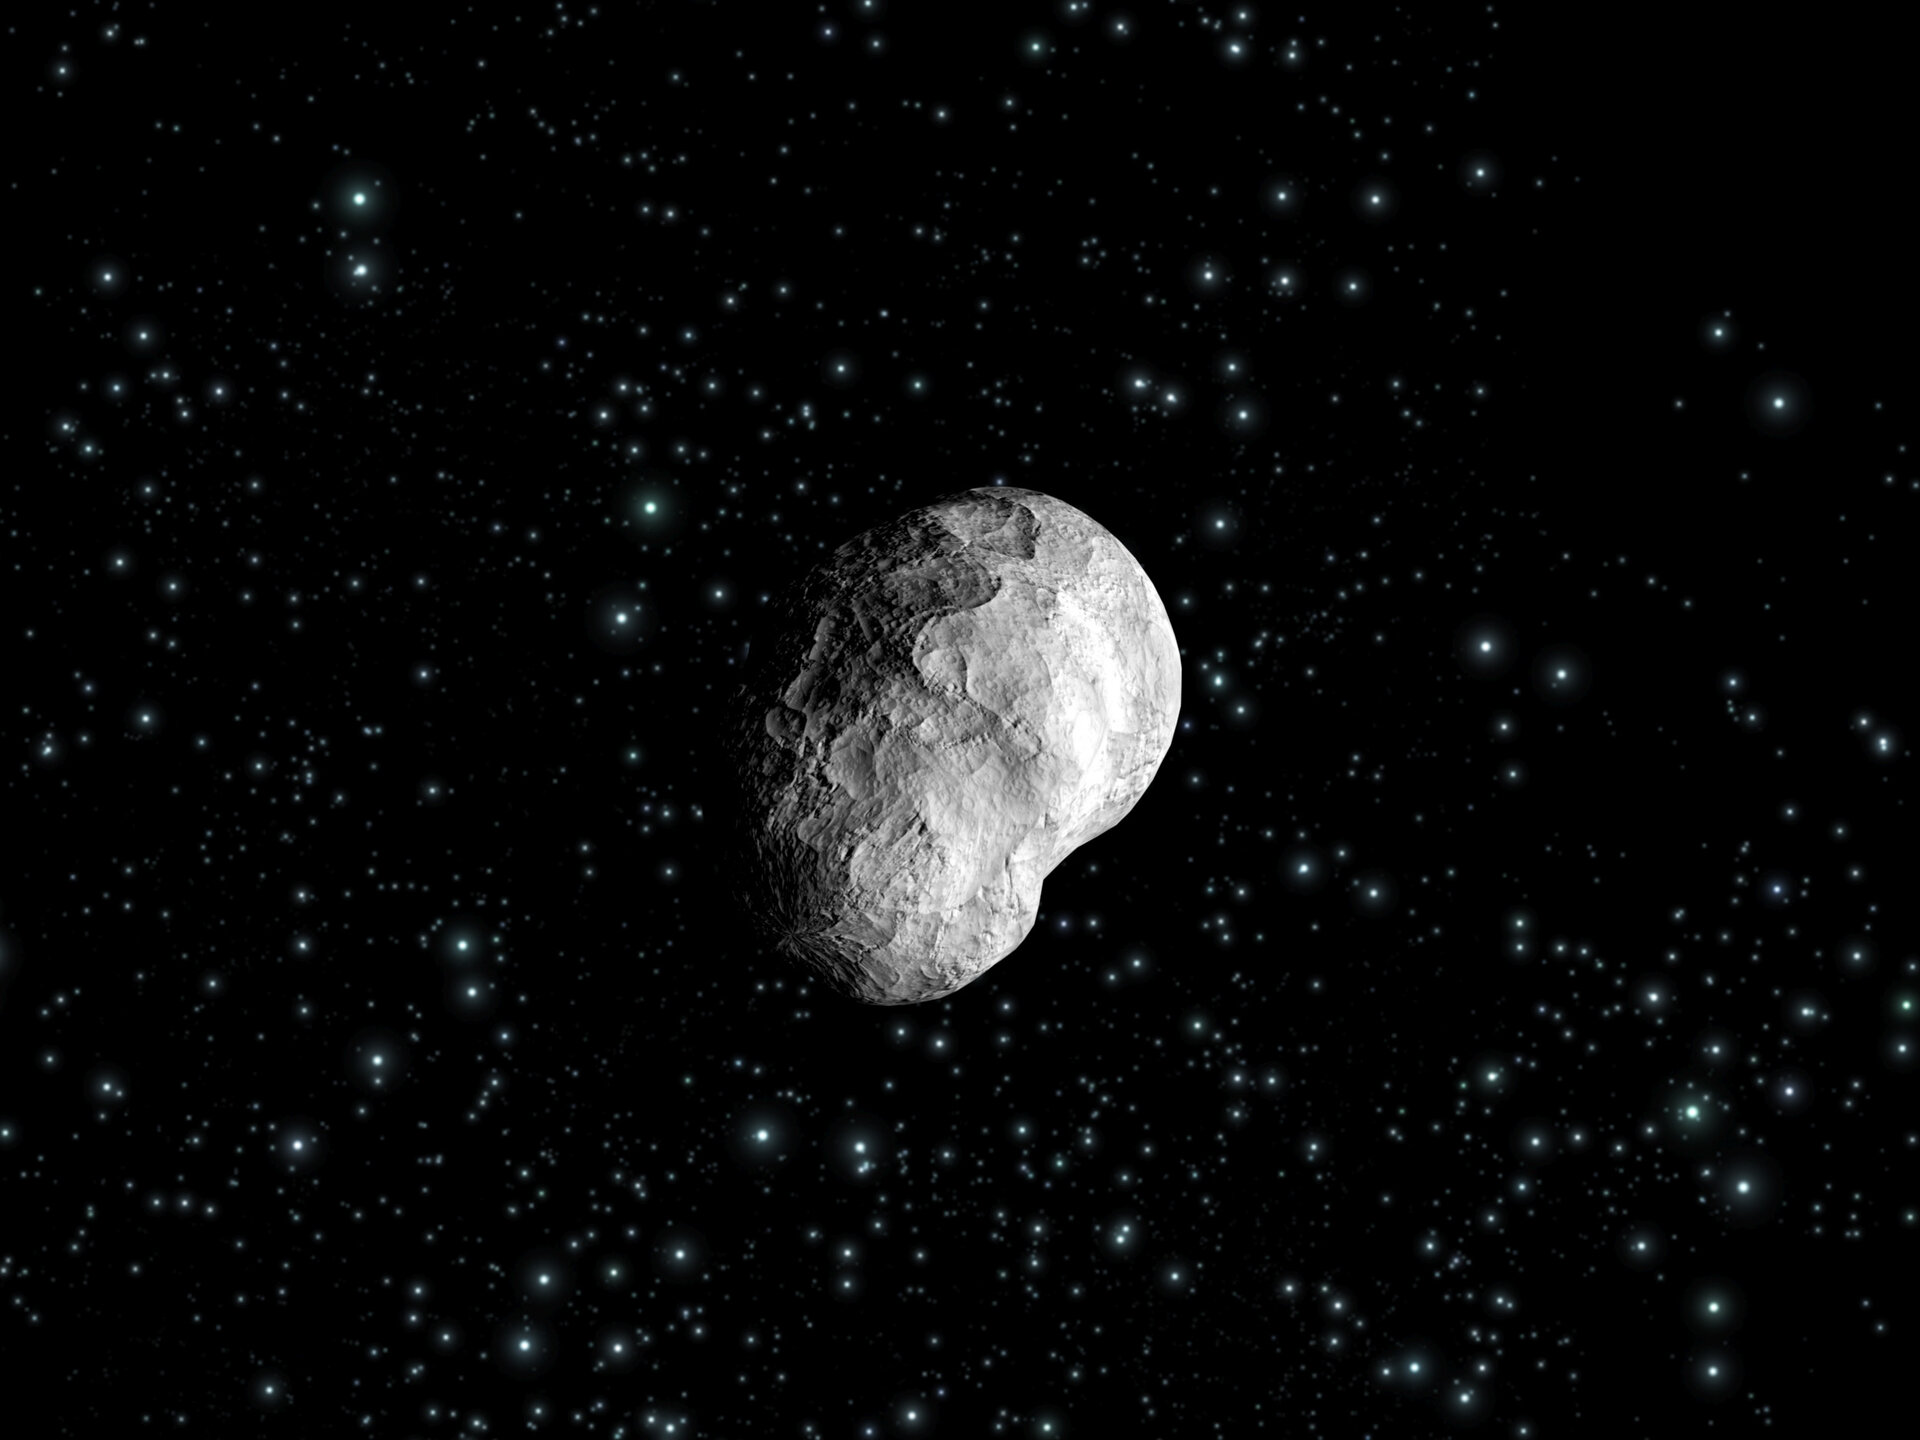 L'asteroide 21 Lutetia, impressione artistica